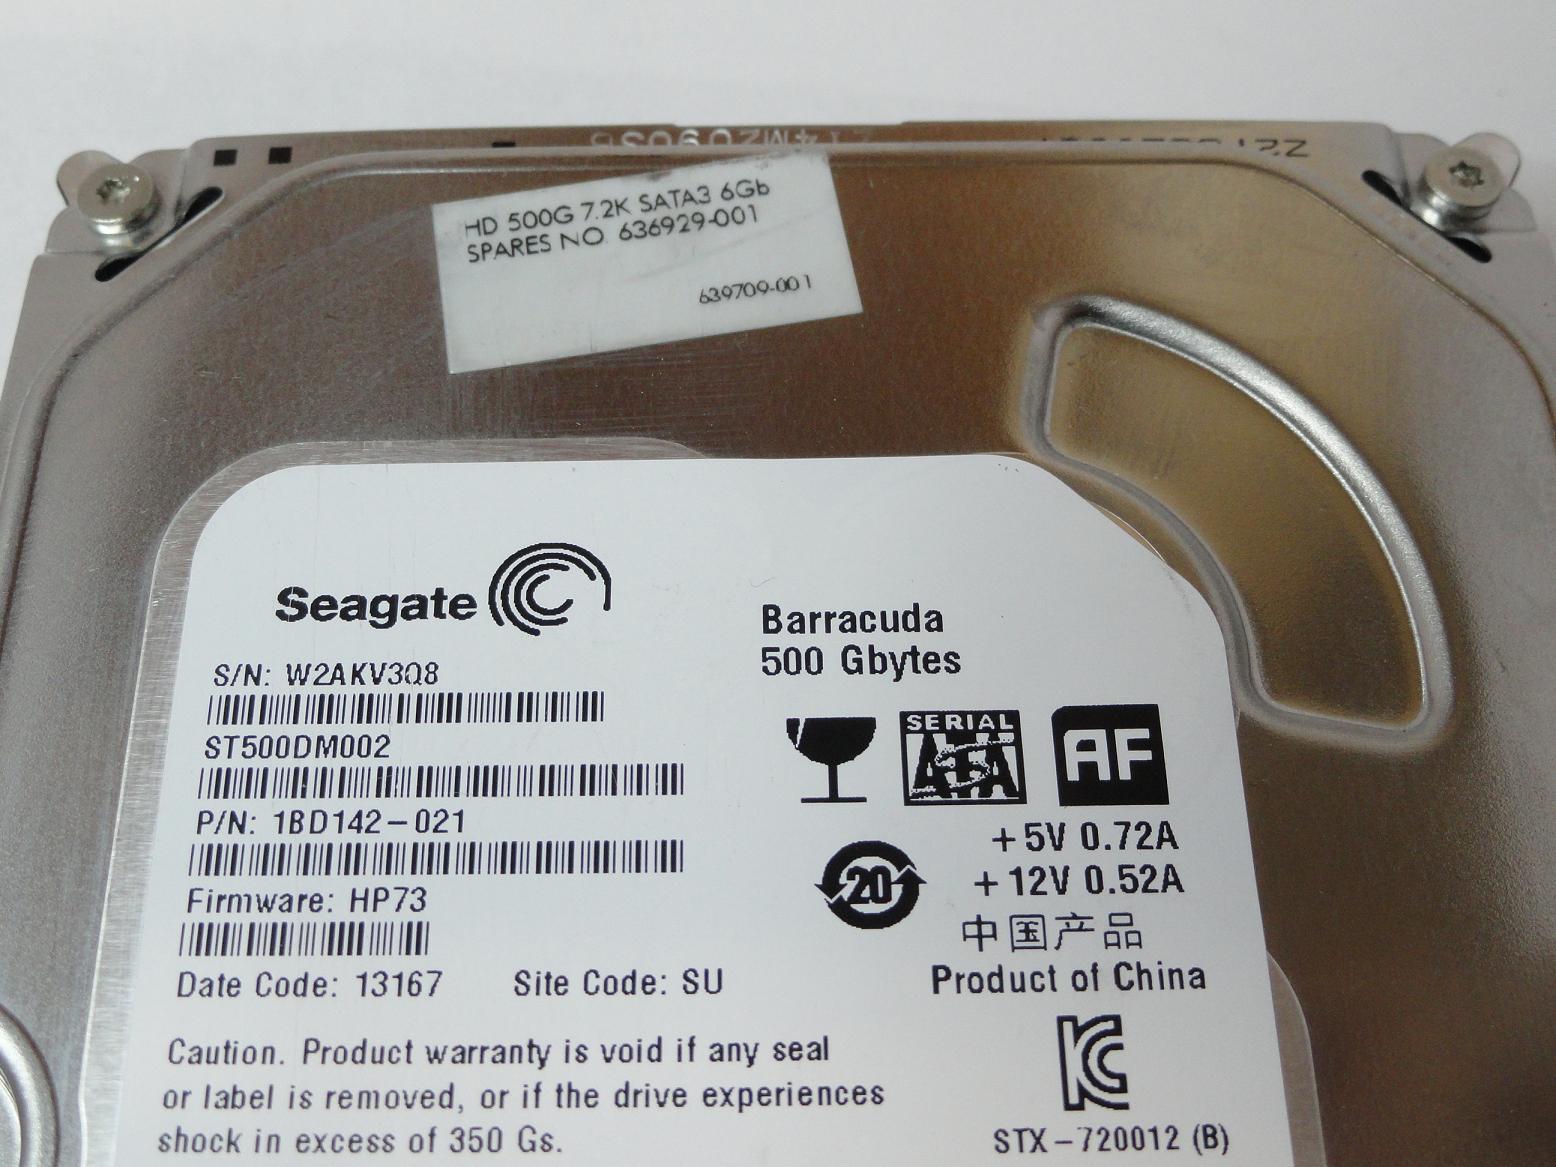 PR24076_1BD142-021_Seagate HP 500GB SATA 7200rpm 3.5in HDD - Image4